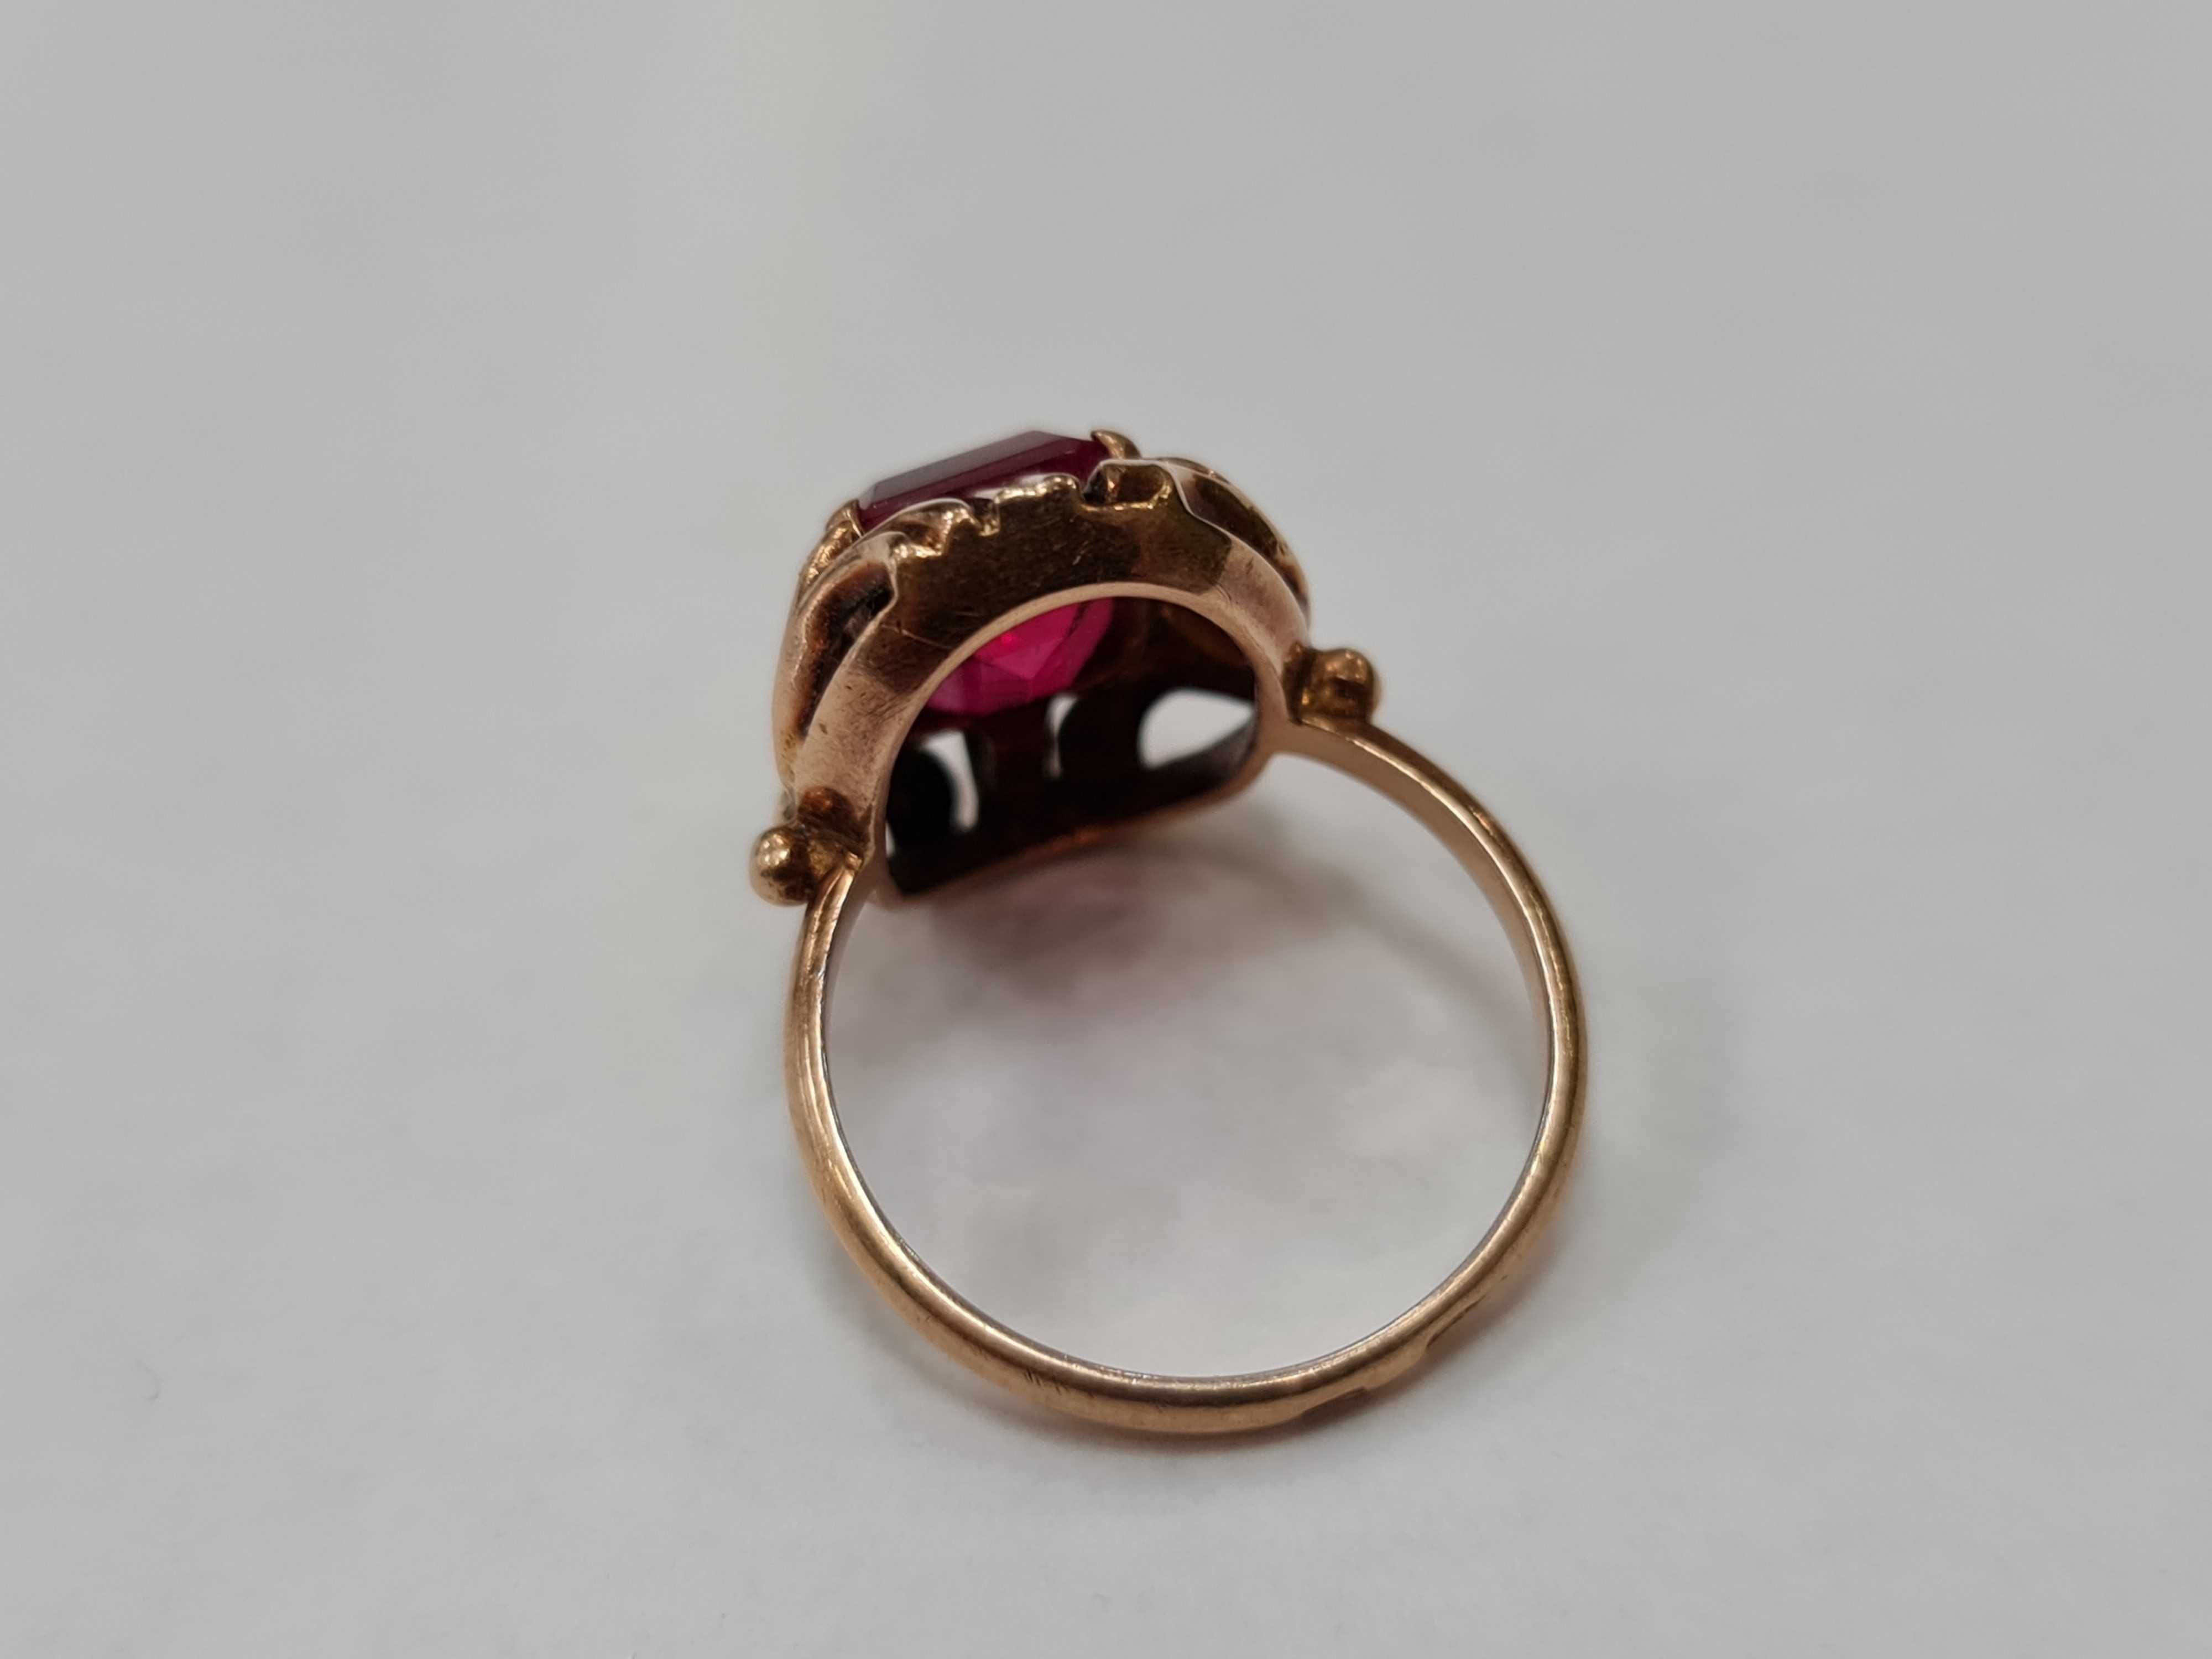 Złoty pierścionek damski/ 583/ 5.33 gram/ R15.5/ Rosja 1927 - 1958